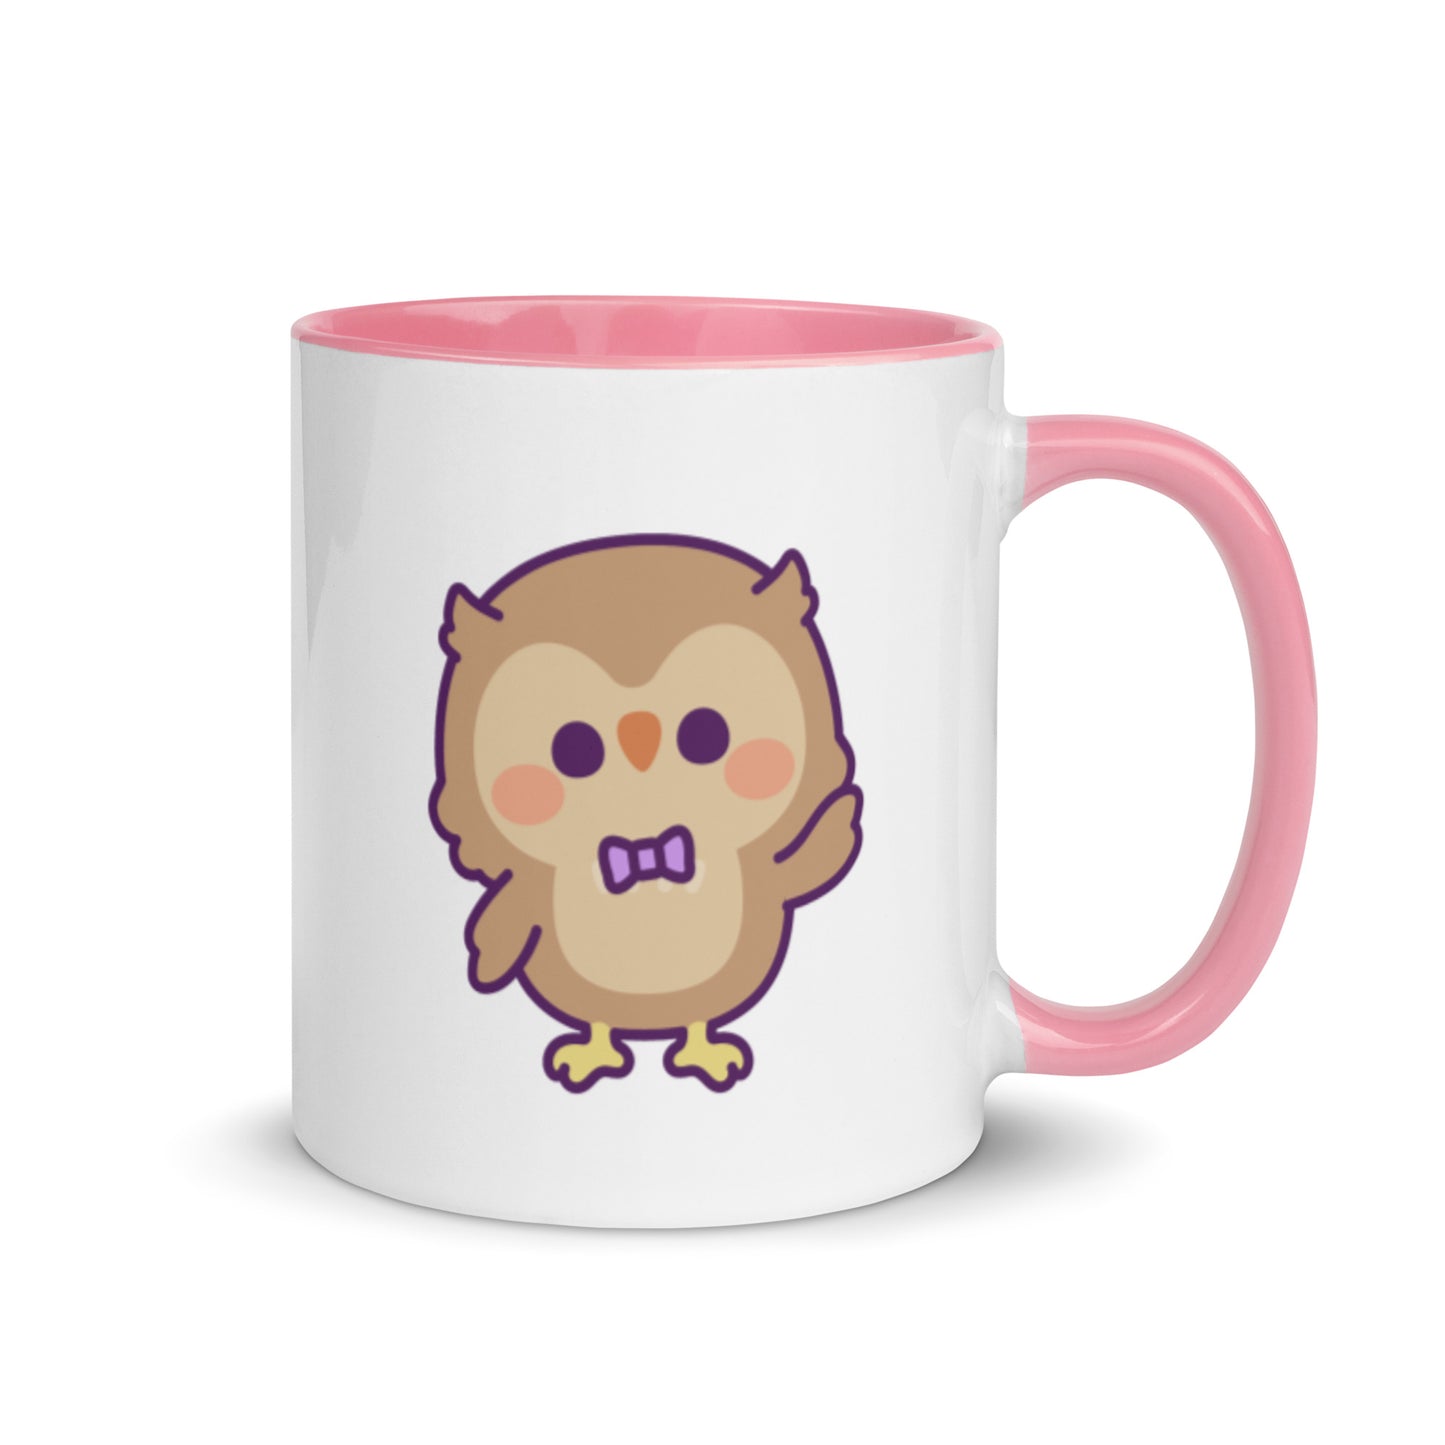 "Hogan" the Owl Mug with Color Inside